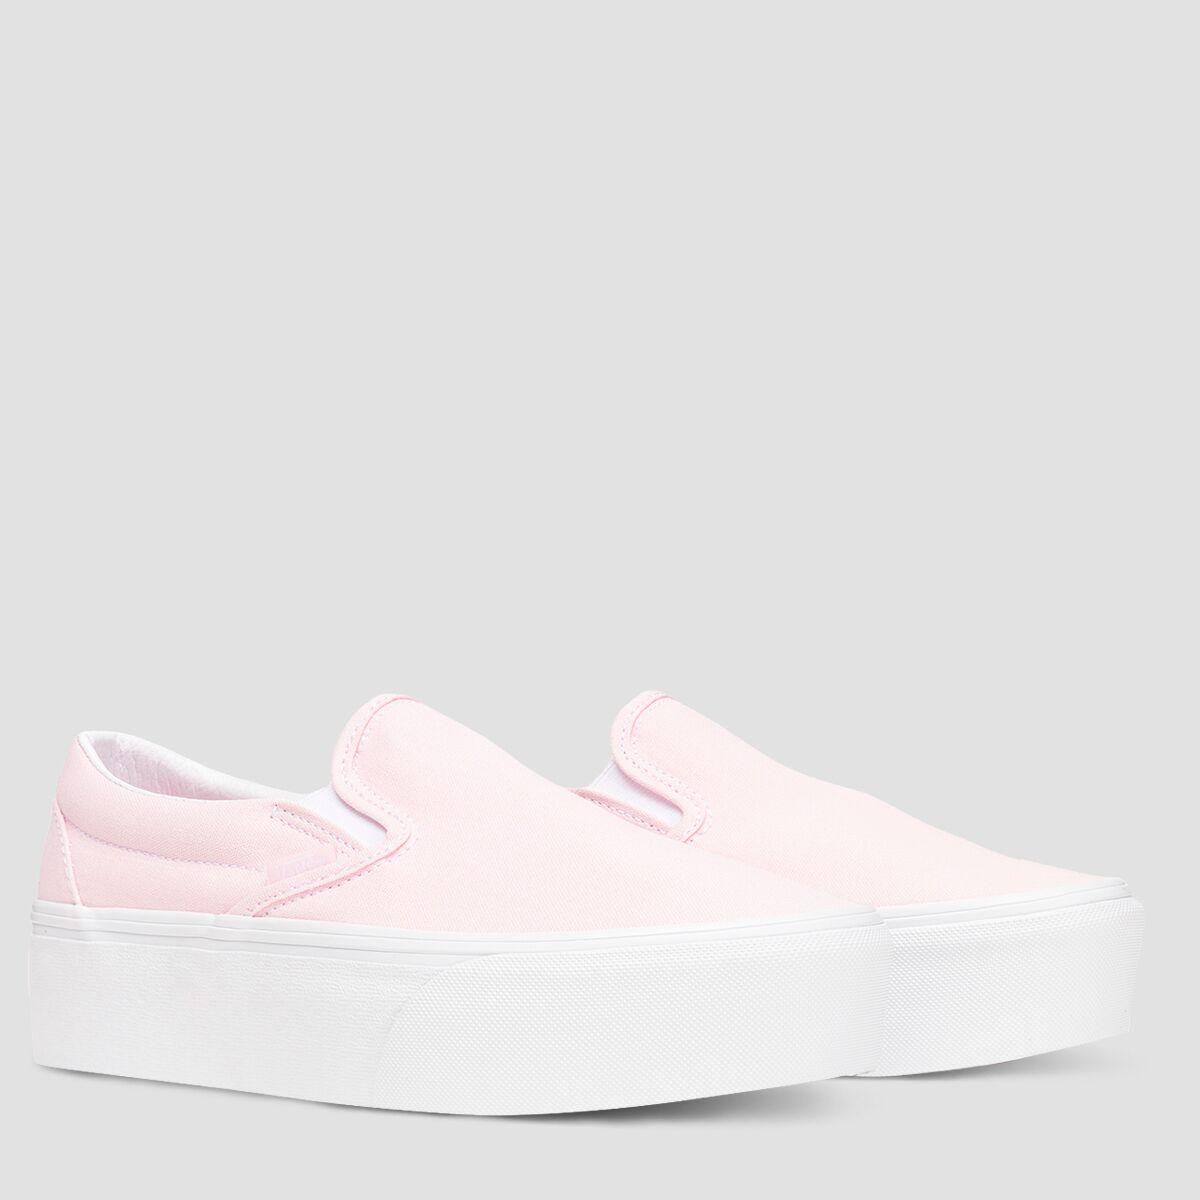 Vans Classic Slip-on Stackform Shoe in Pink | Lyst